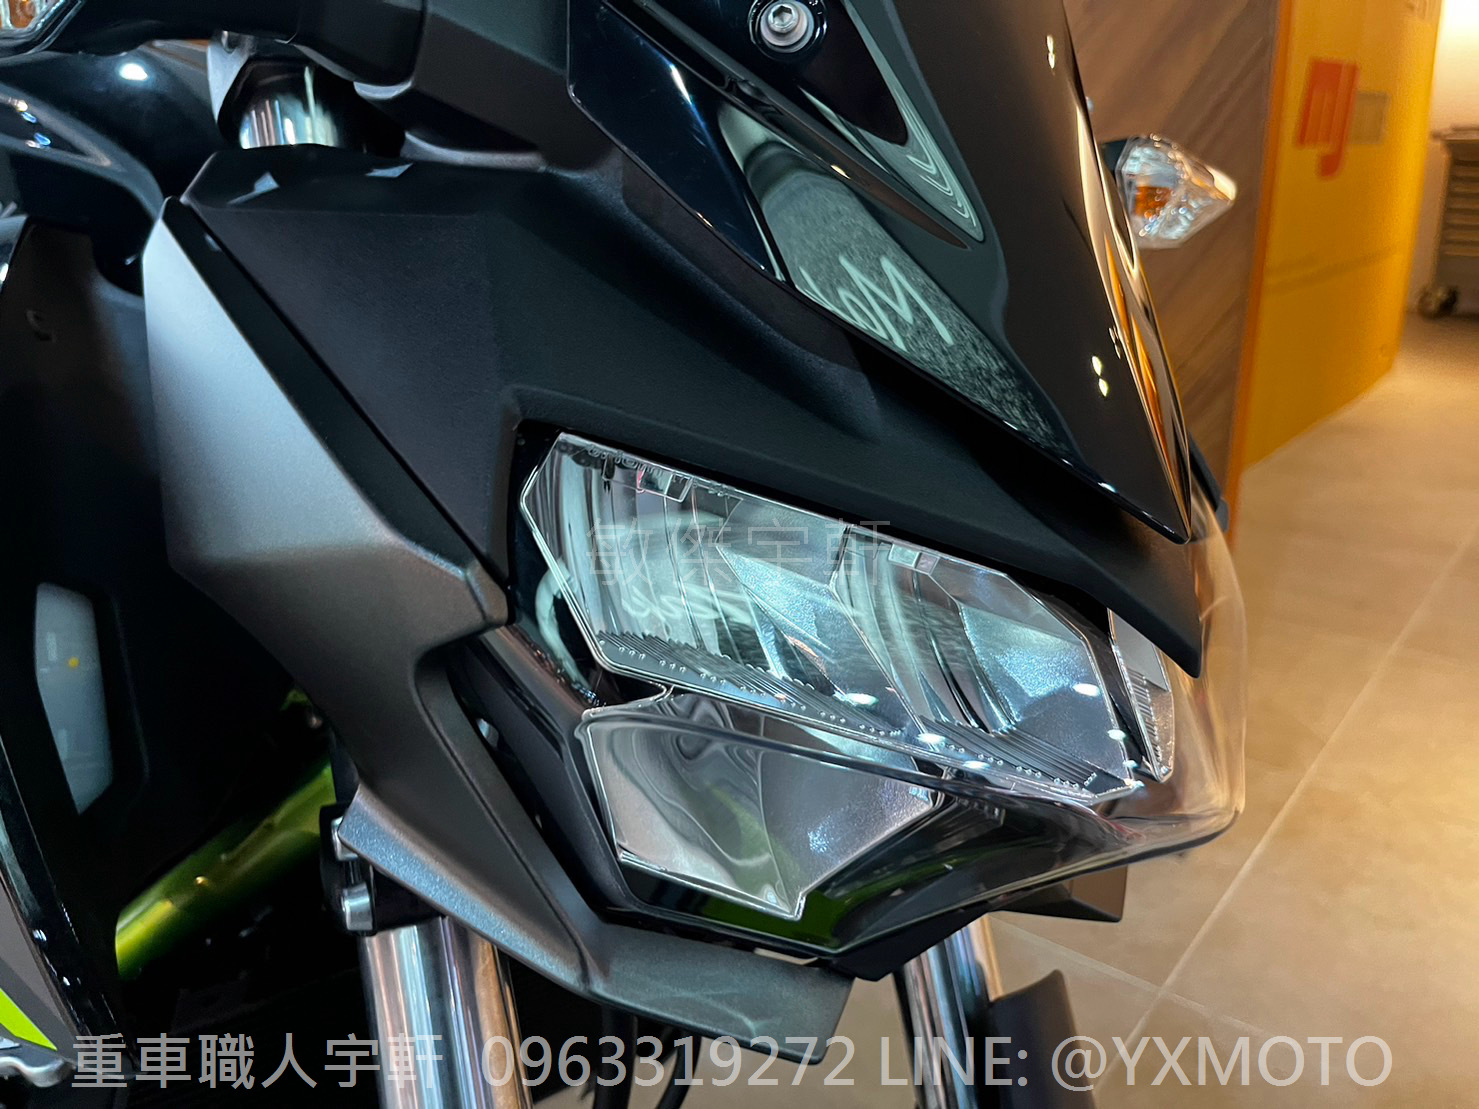 KAWASAKI Z400新車出售中 【敏傑宇軒】2023 KAWASAKI Z400 黑色+綠骨 總代理公司車 | 重車銷售職人-宇軒 (敏傑)